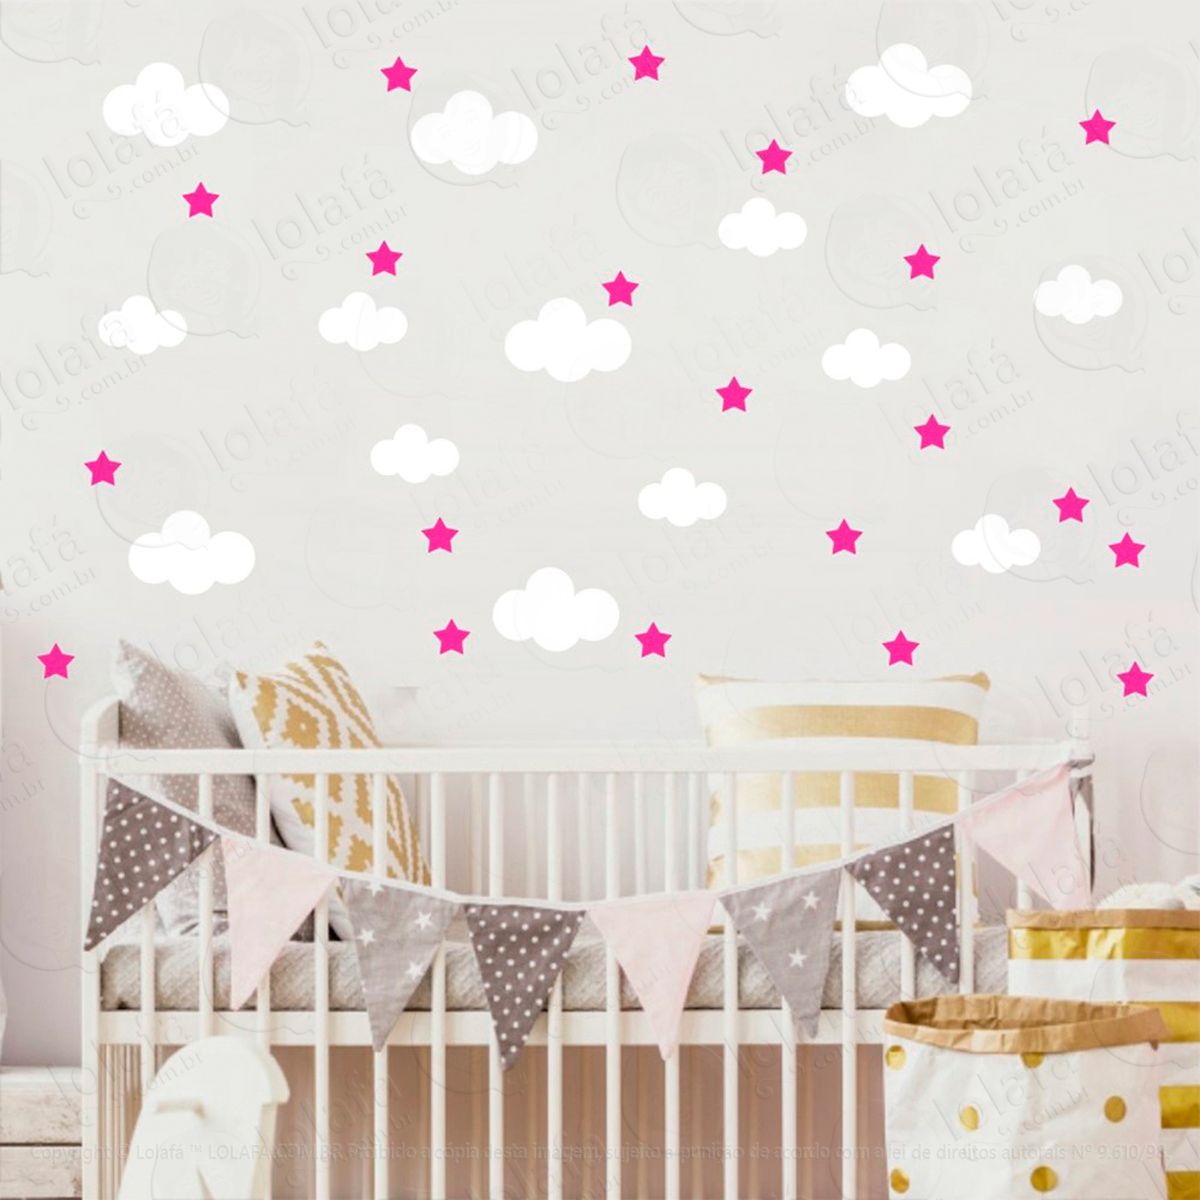 adesivos nuvens e estrelas 104 peças adesivos para quarto de bebê infantil - mod:828